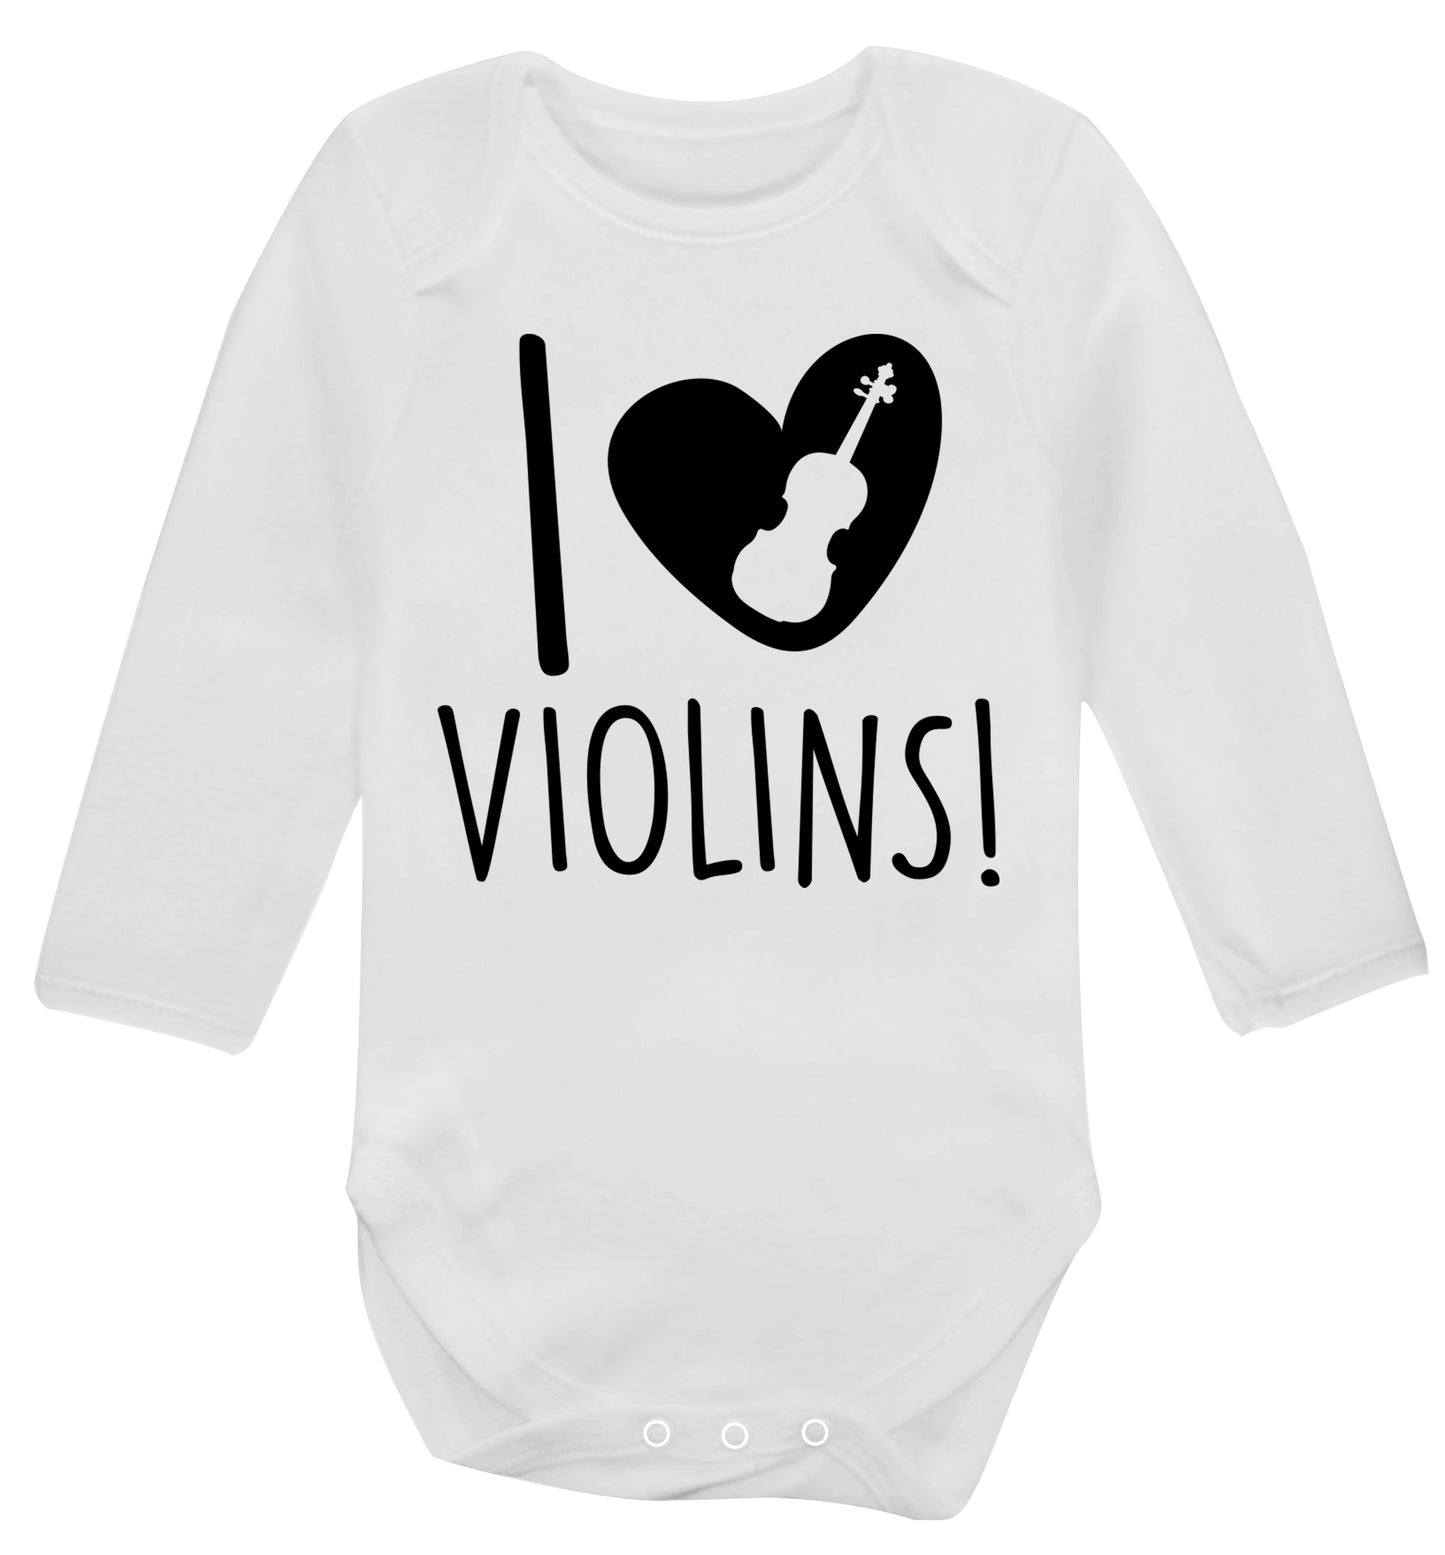 I Love Violins Baby Vest long sleeved white 6-12 months